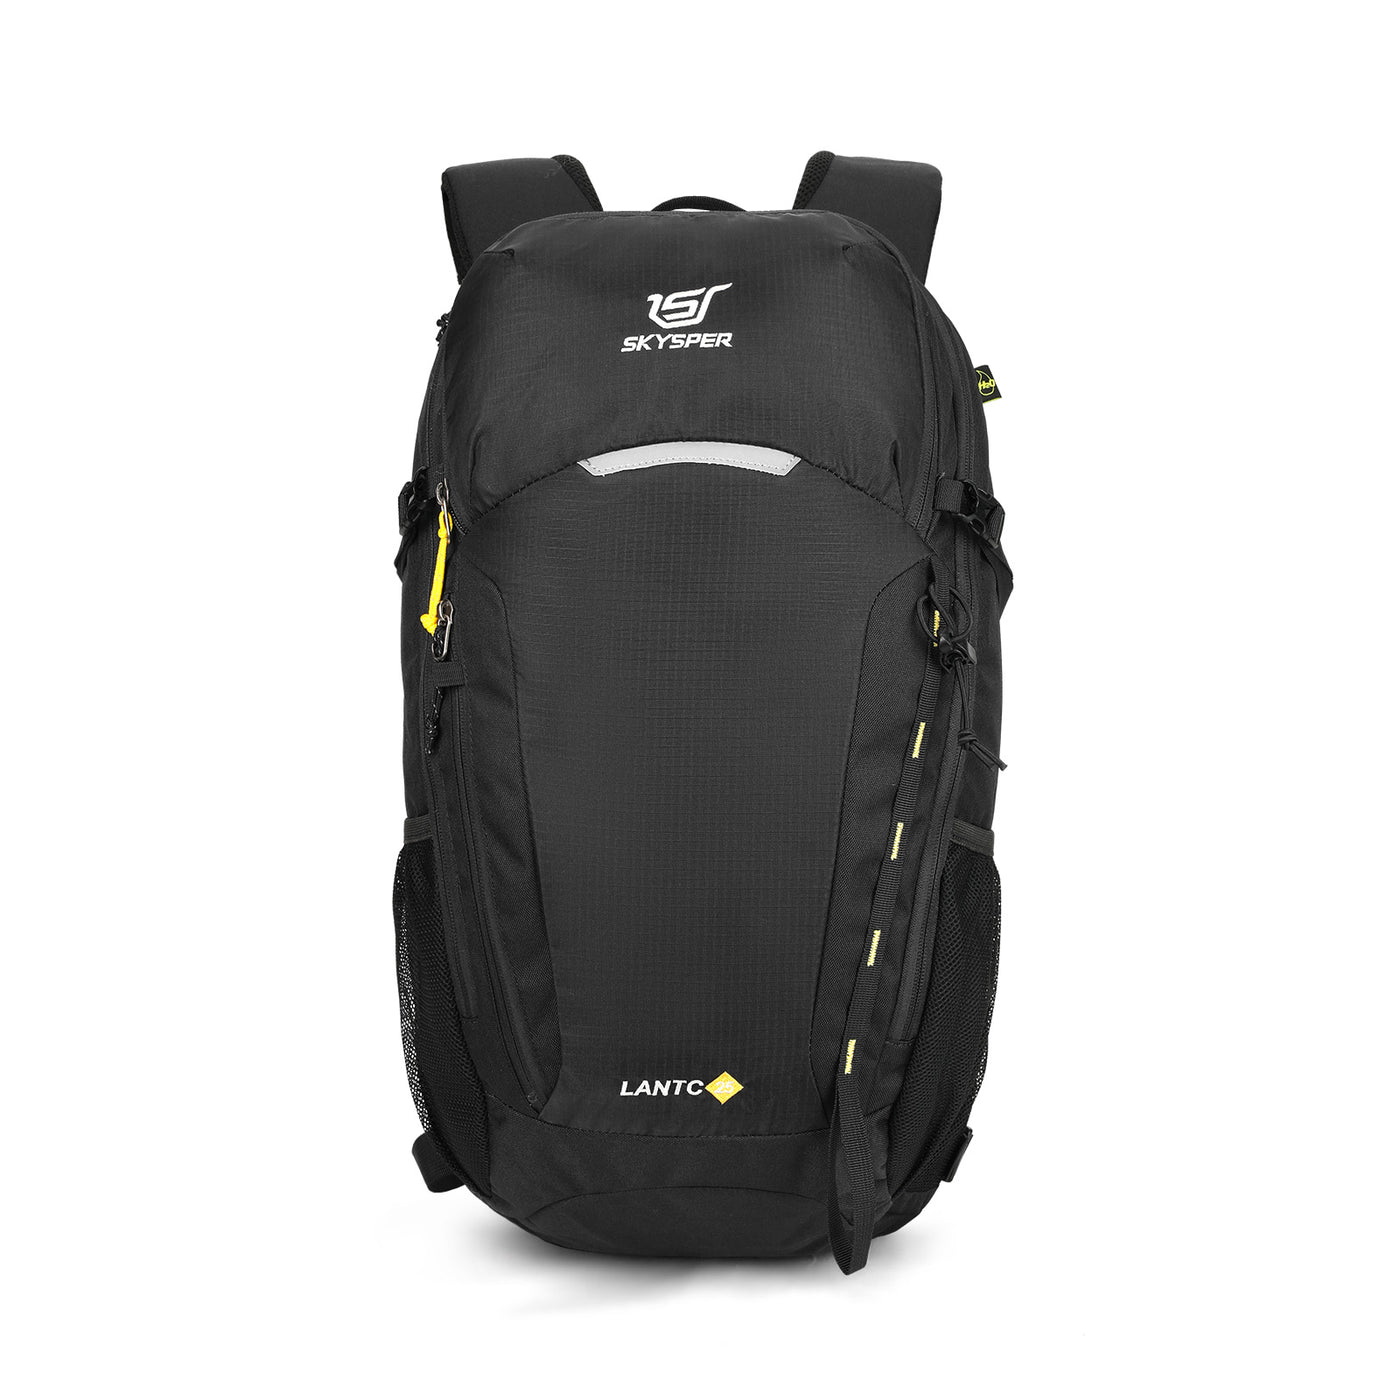 SKYSPER LANTC25L - Hiking Daypack Waterproof Backpack 25L